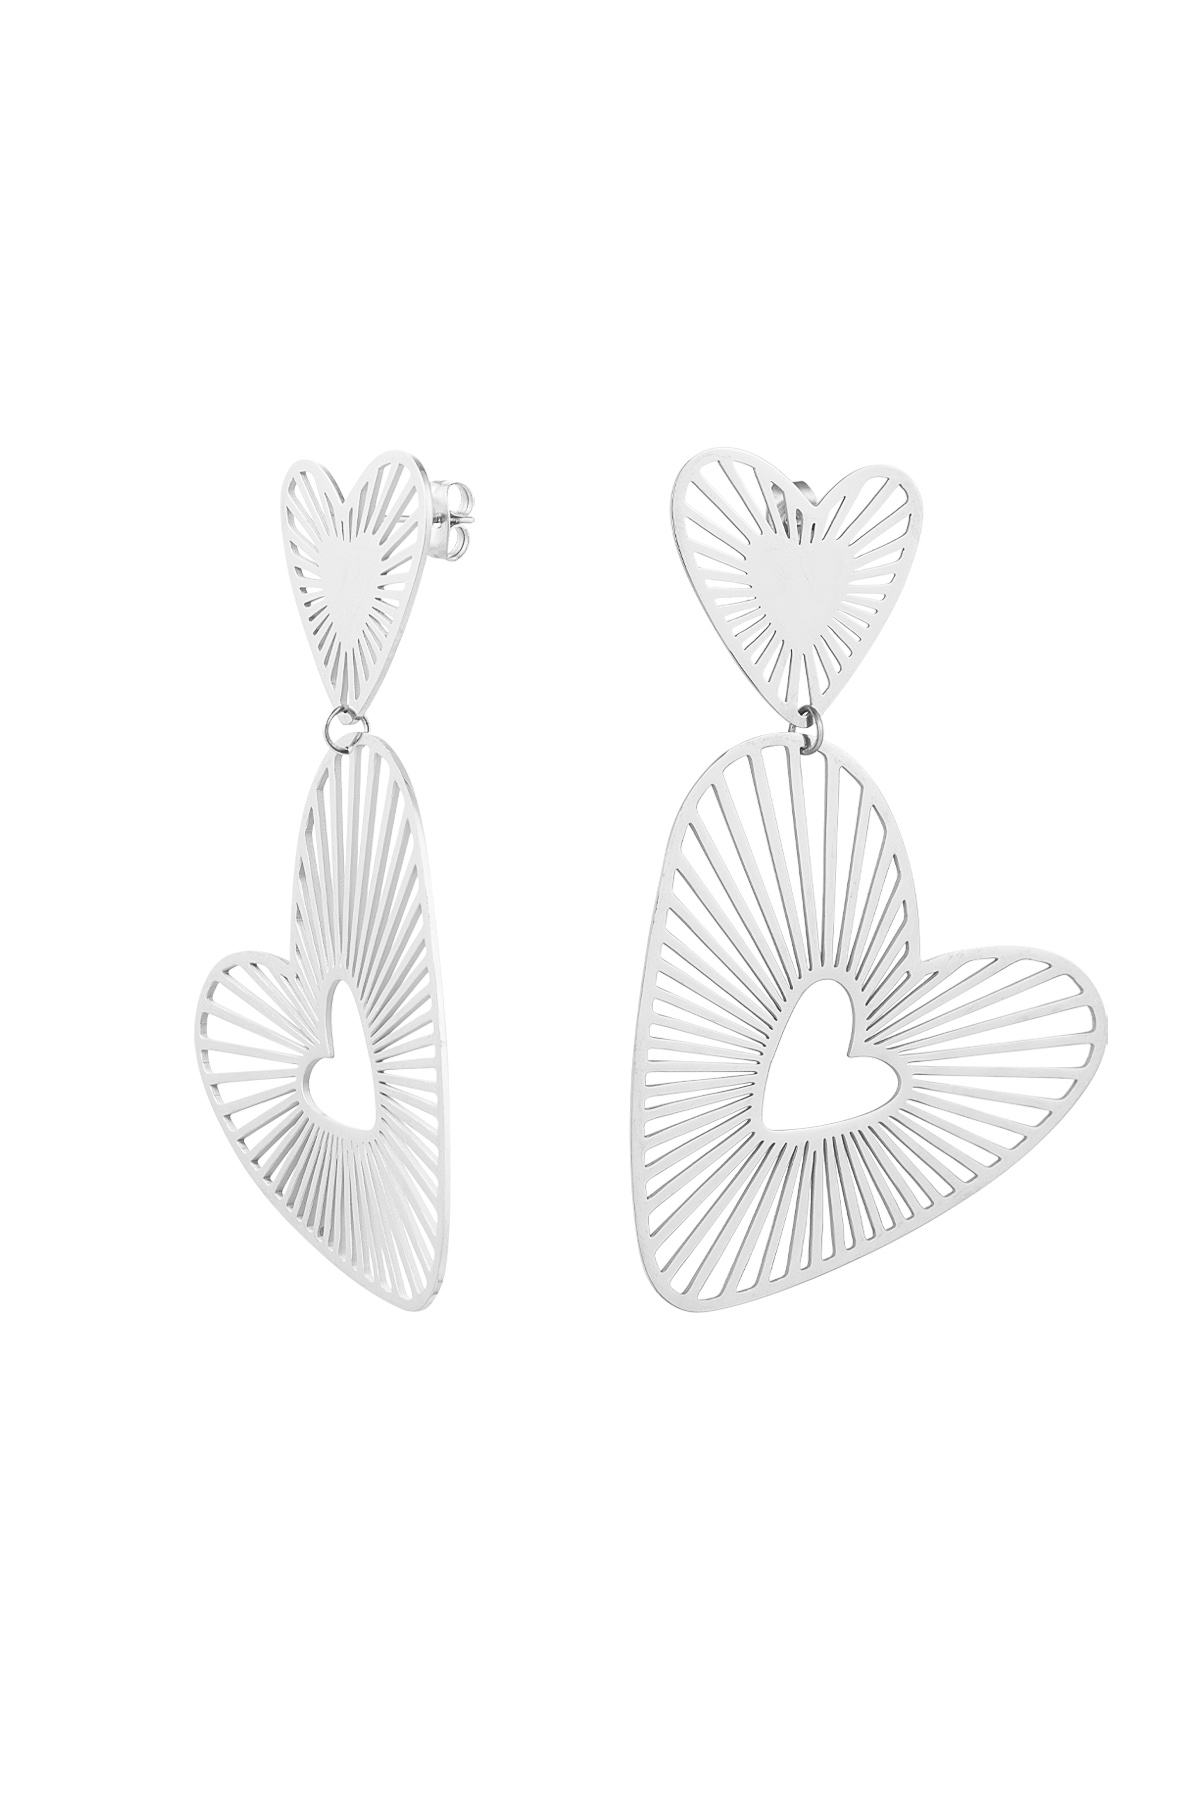 Double heart earrings - silver